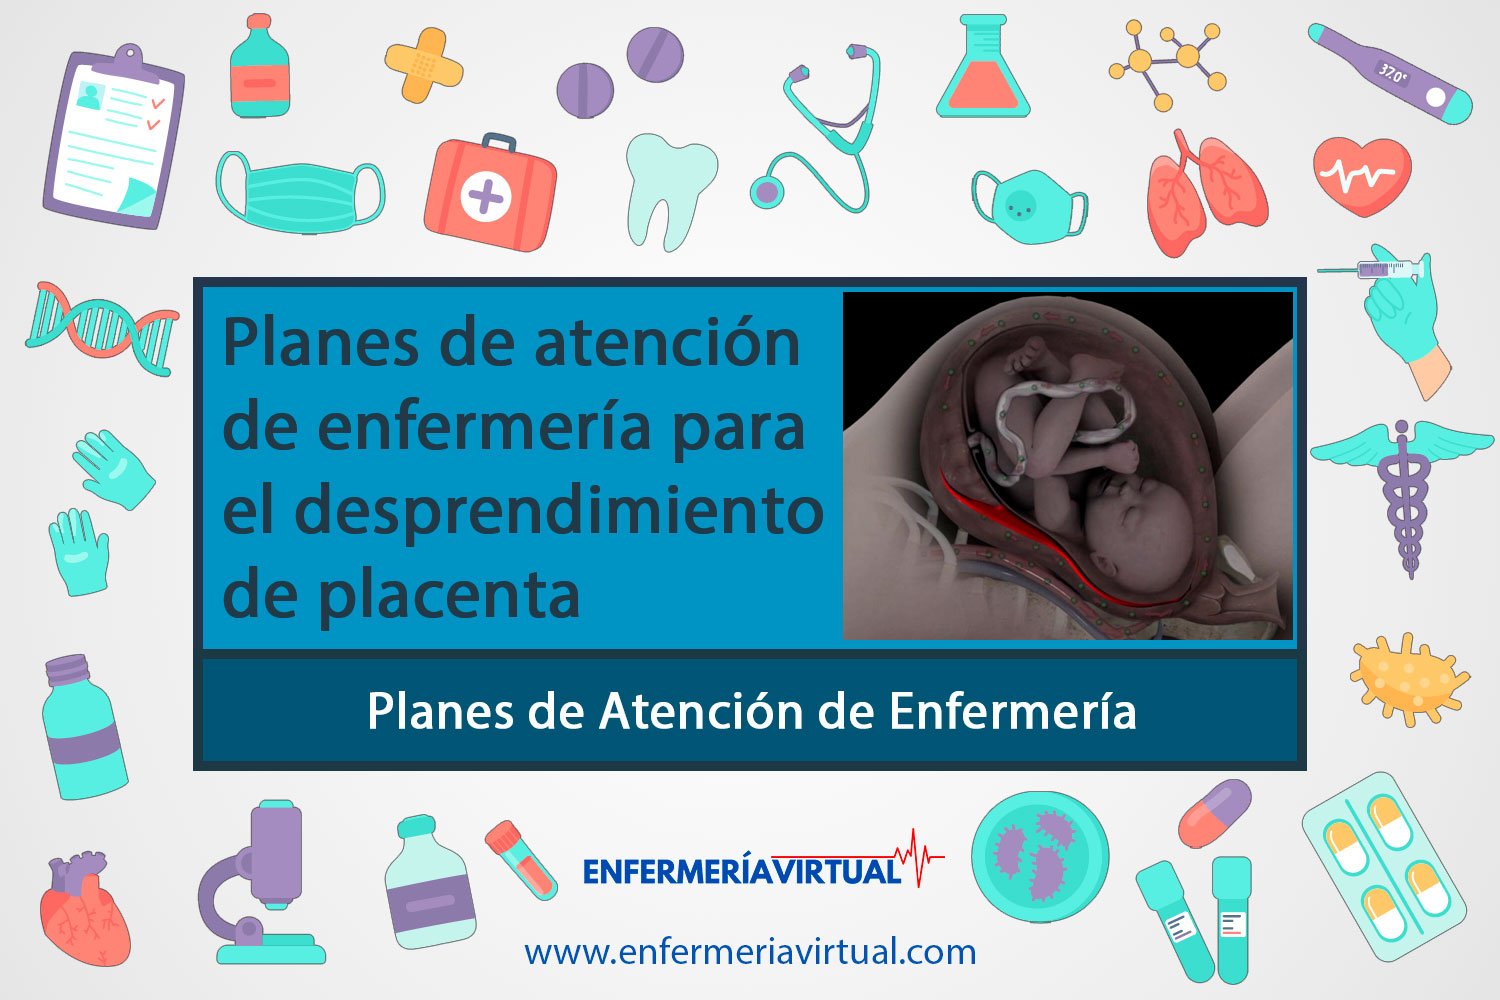 Planes de atención de enfermería para el desprendimiento de placenta abruptio placentae